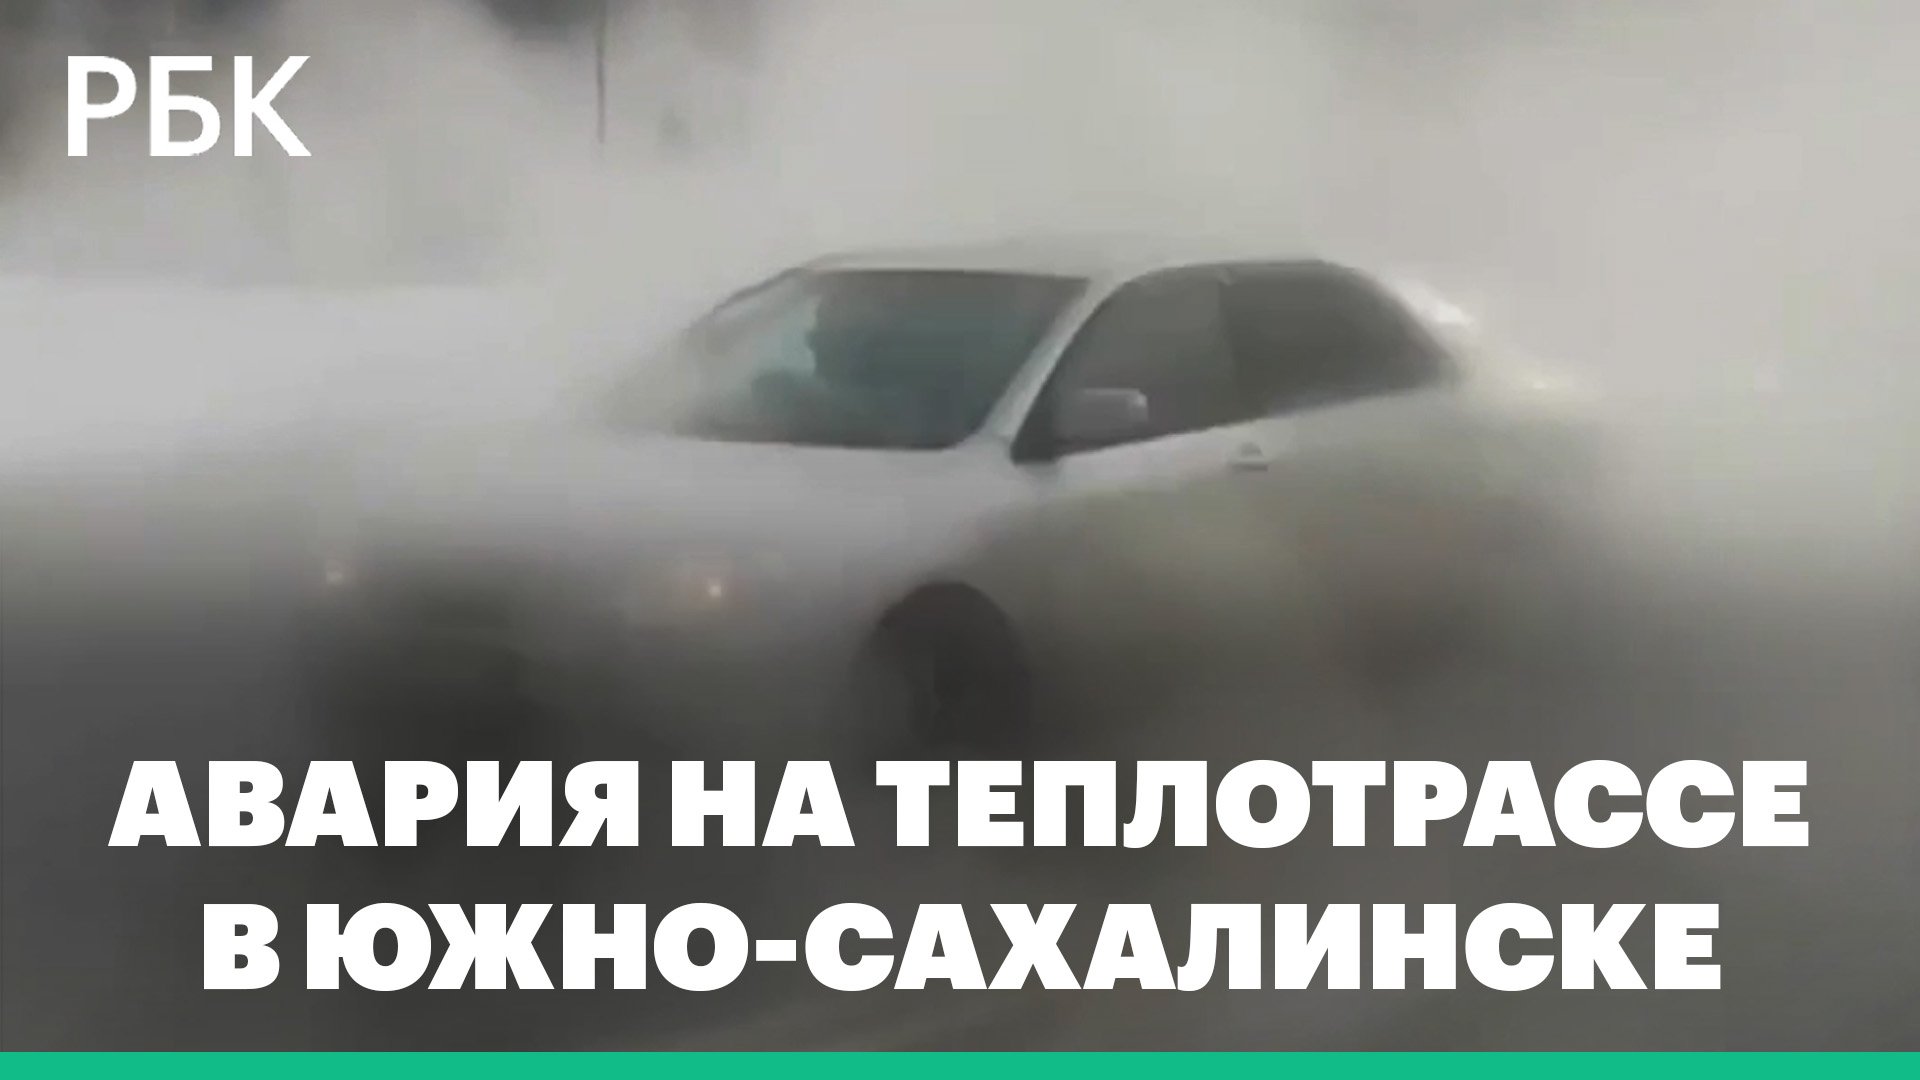 Машины пропадают в облаке пара из-за аварии в Южно-Сахалинске